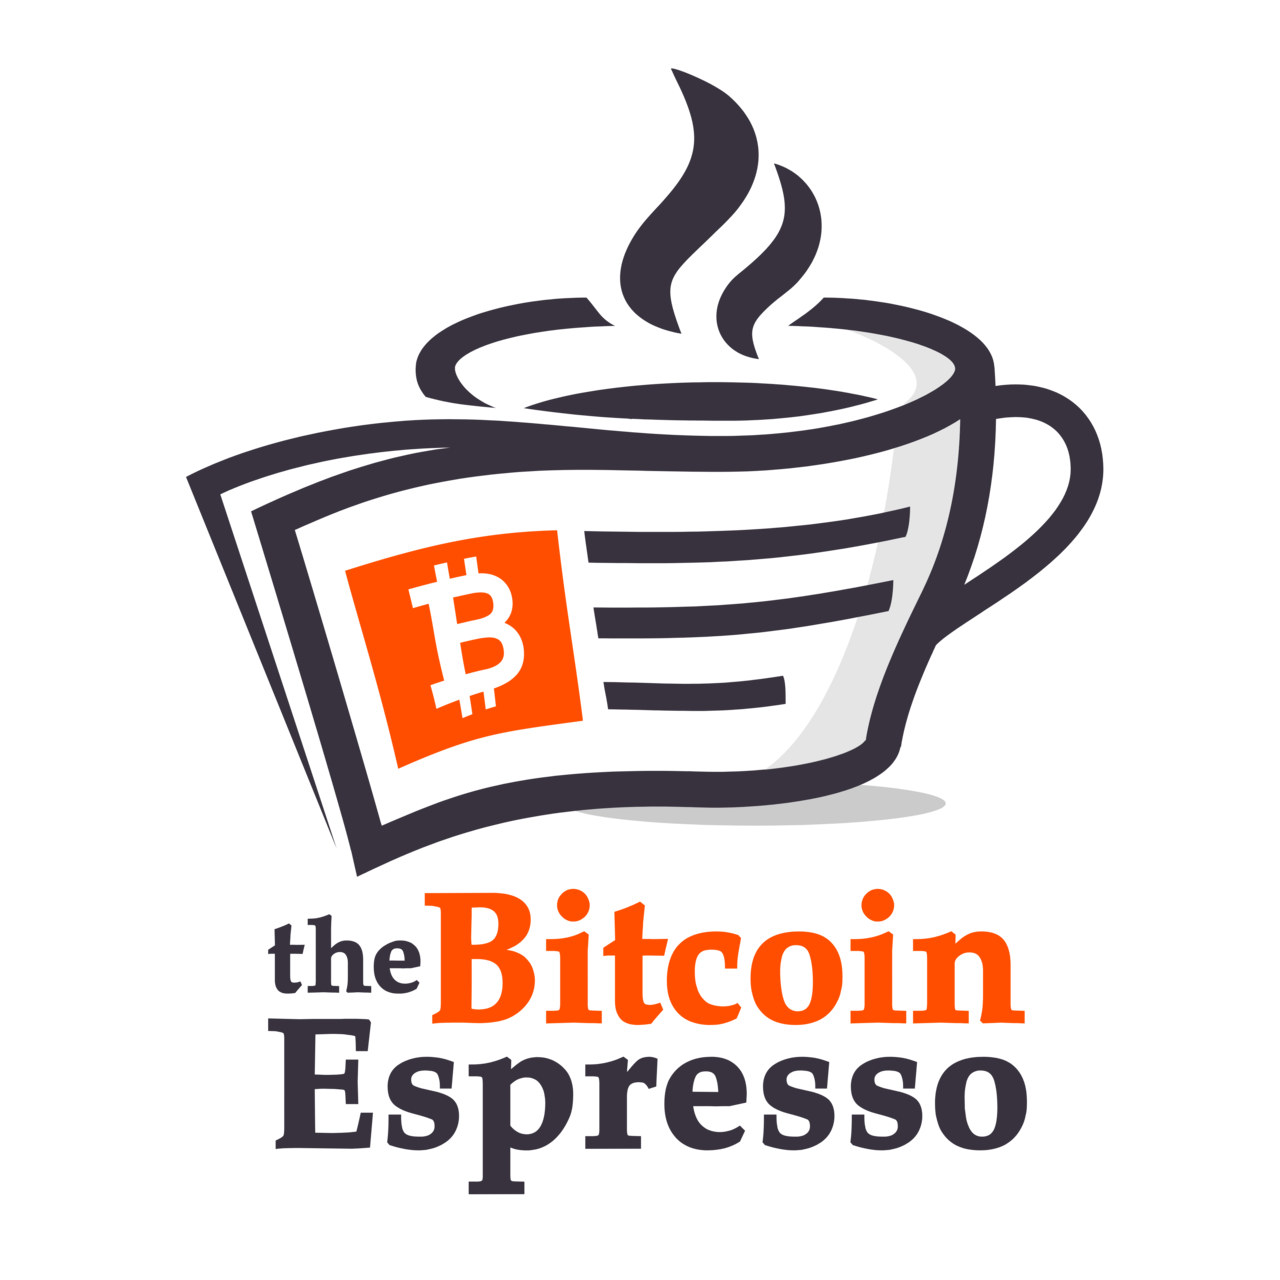 The Bitcoin Espresso